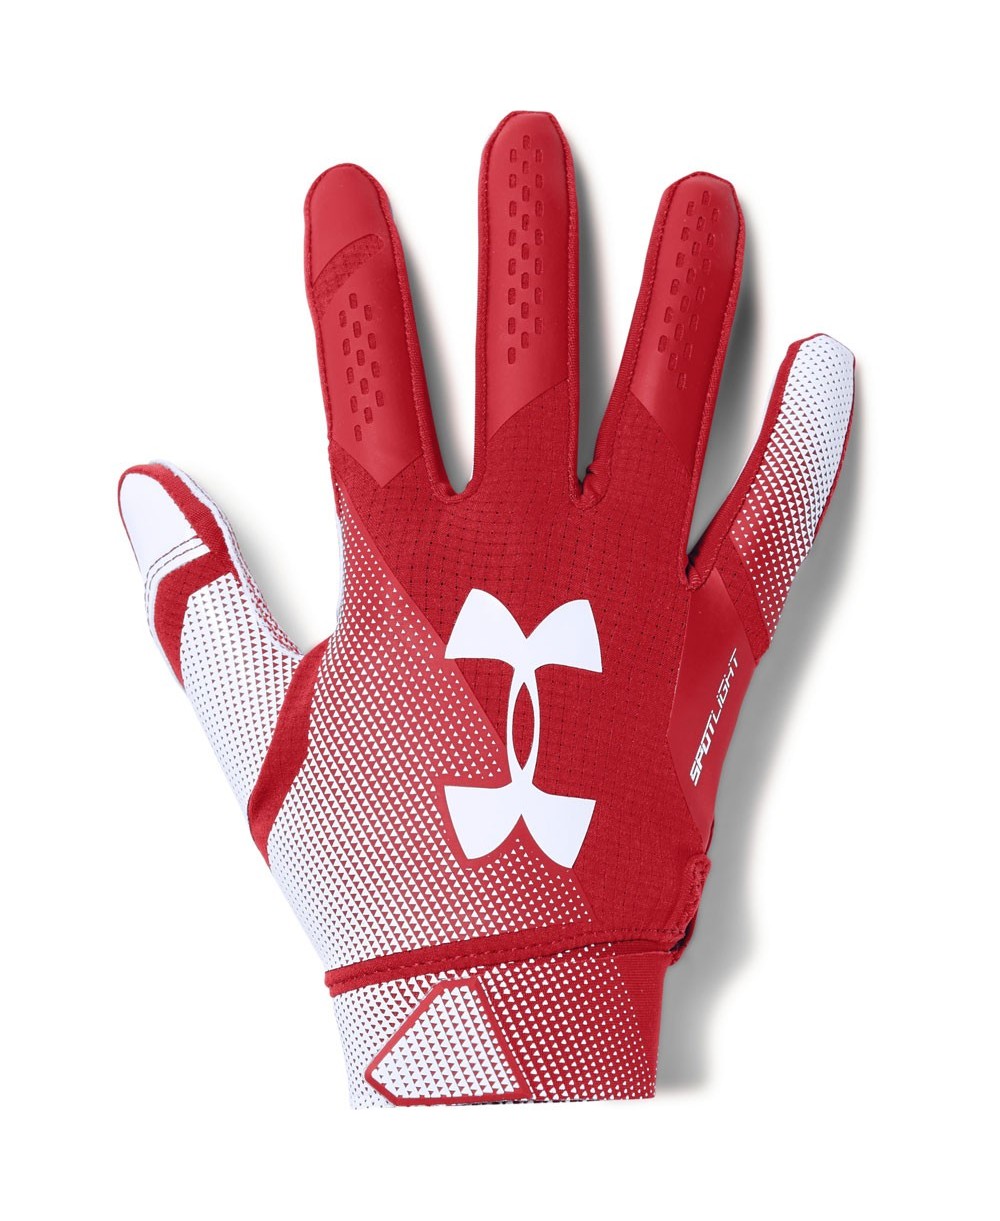 Under Armour Spotlight NFL Men's American Football Gloves Red/White